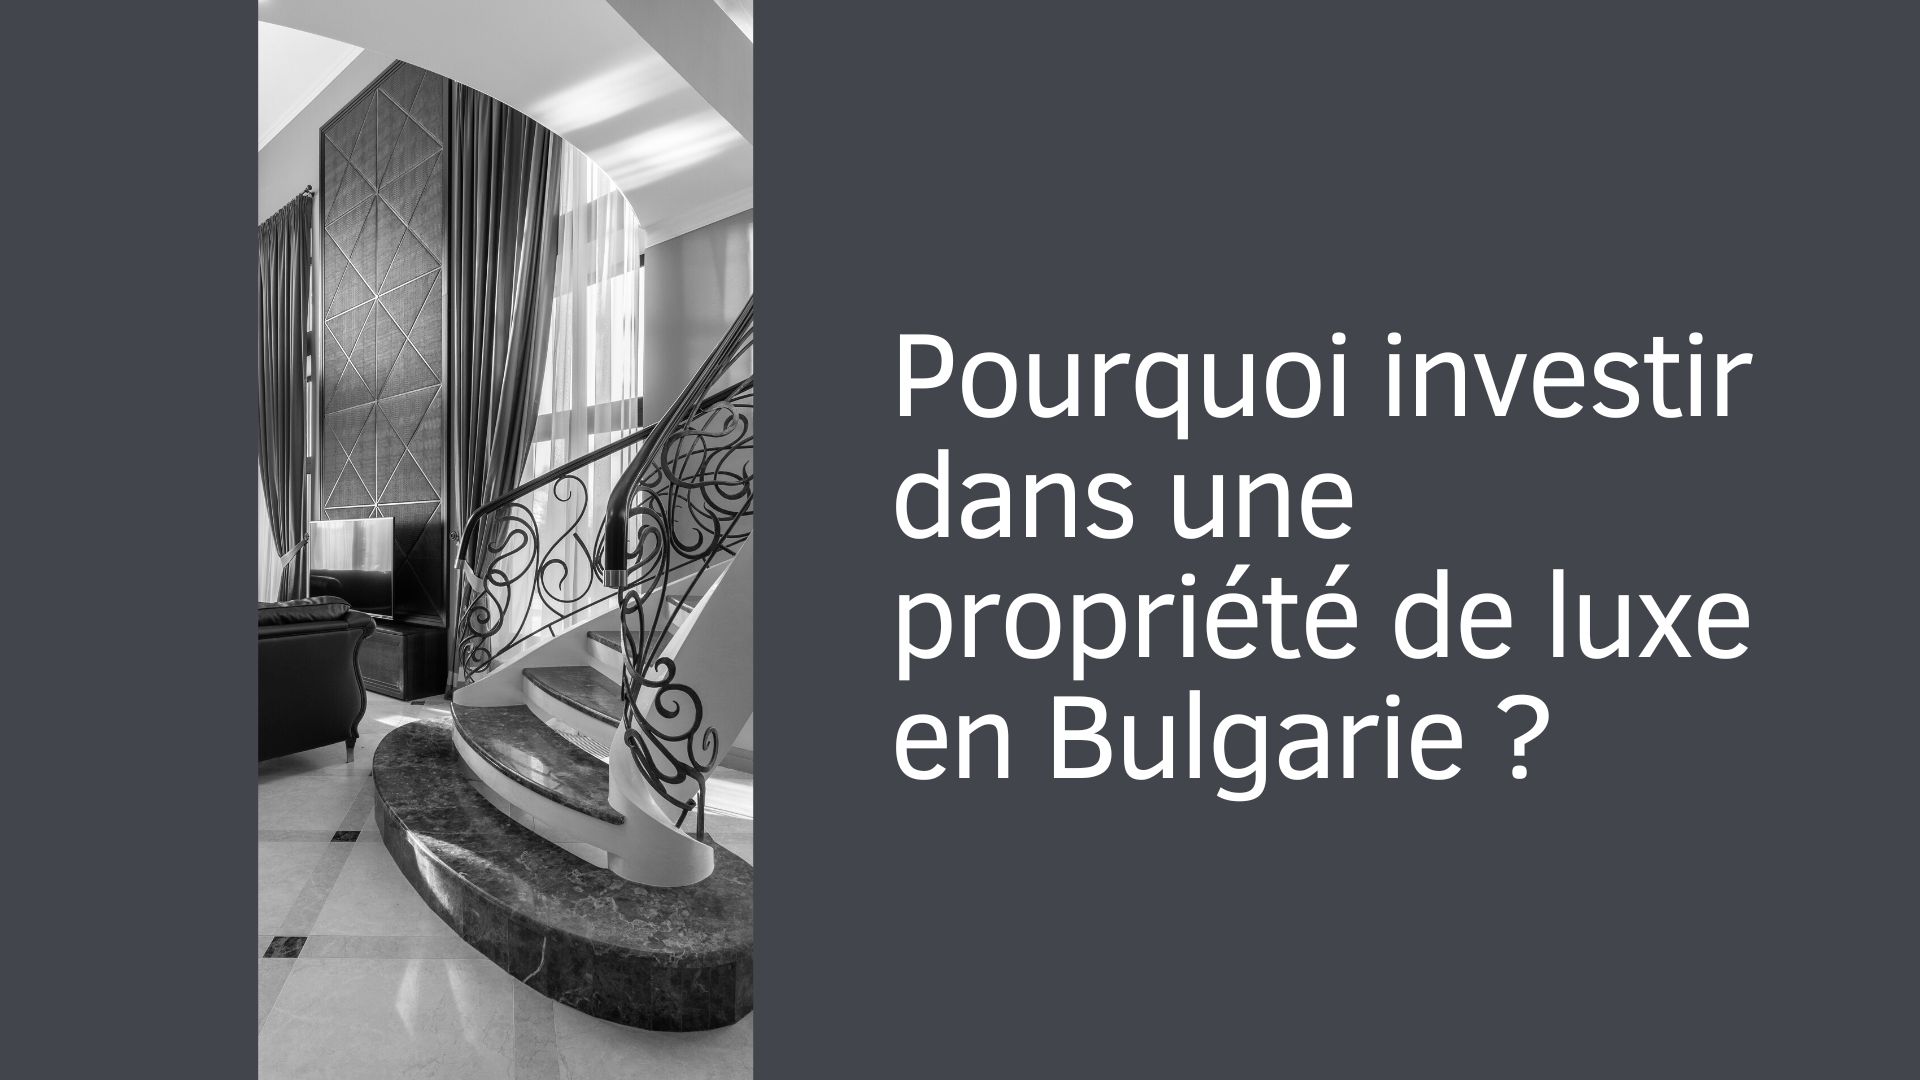 Pourquoi investir des fonds dans l'immobilier de luxe en Bulgarie ?